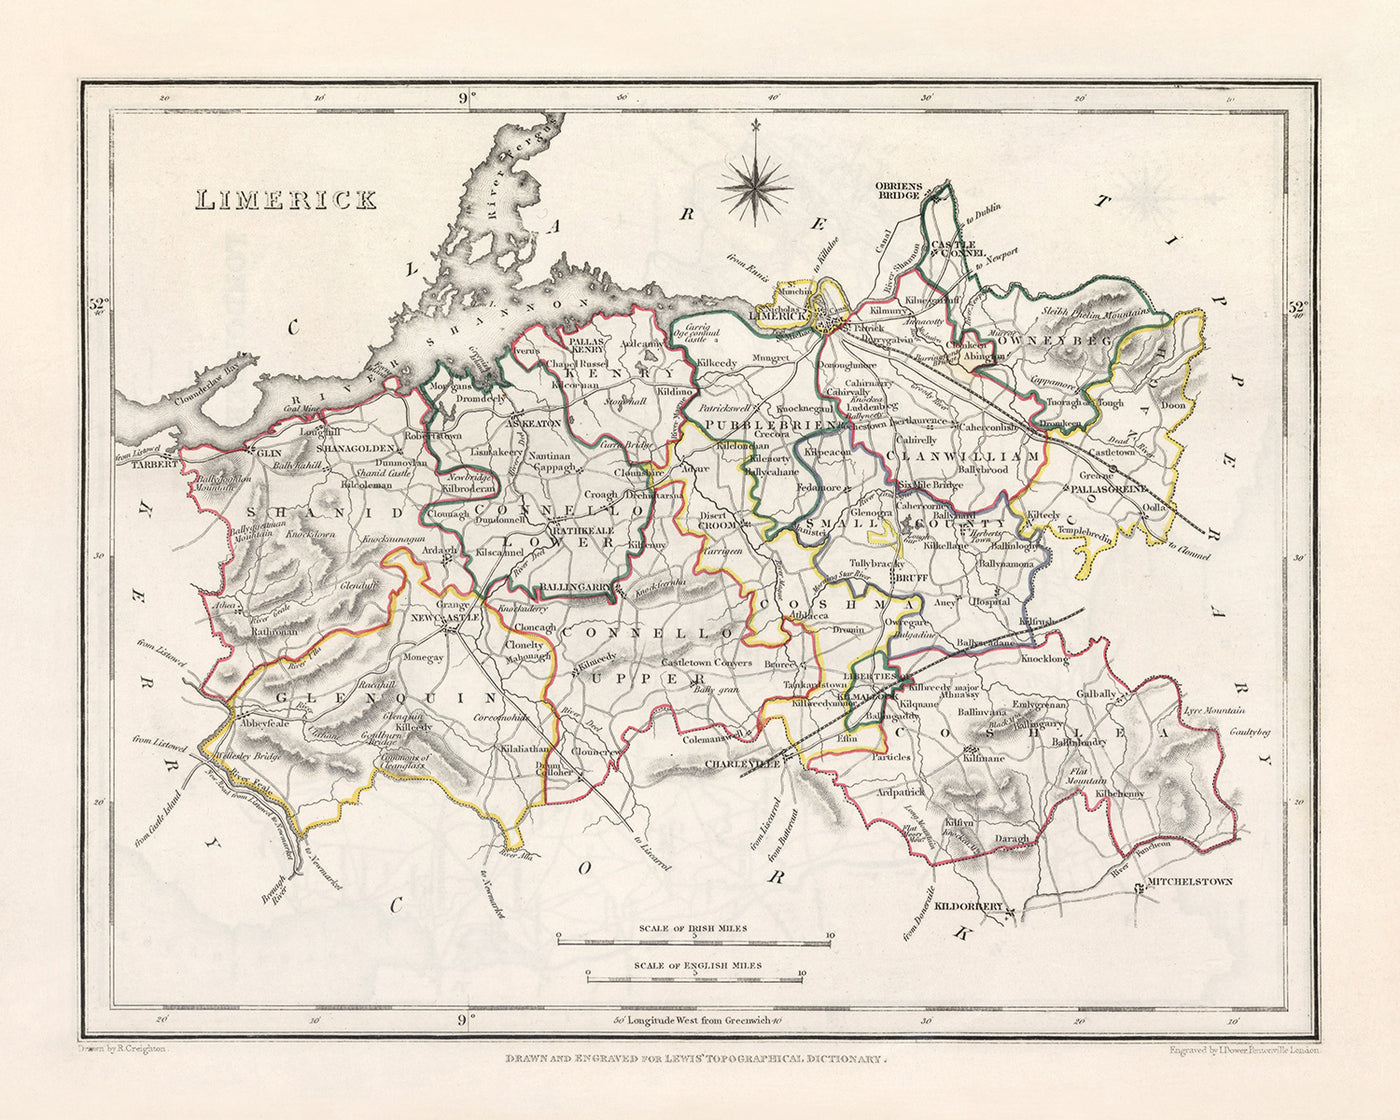 Alte Karte der Grafschaft Limerick von Samuel Lewis, 1844: Adare, Askeaton, Bruree, Croom, Kilmallock